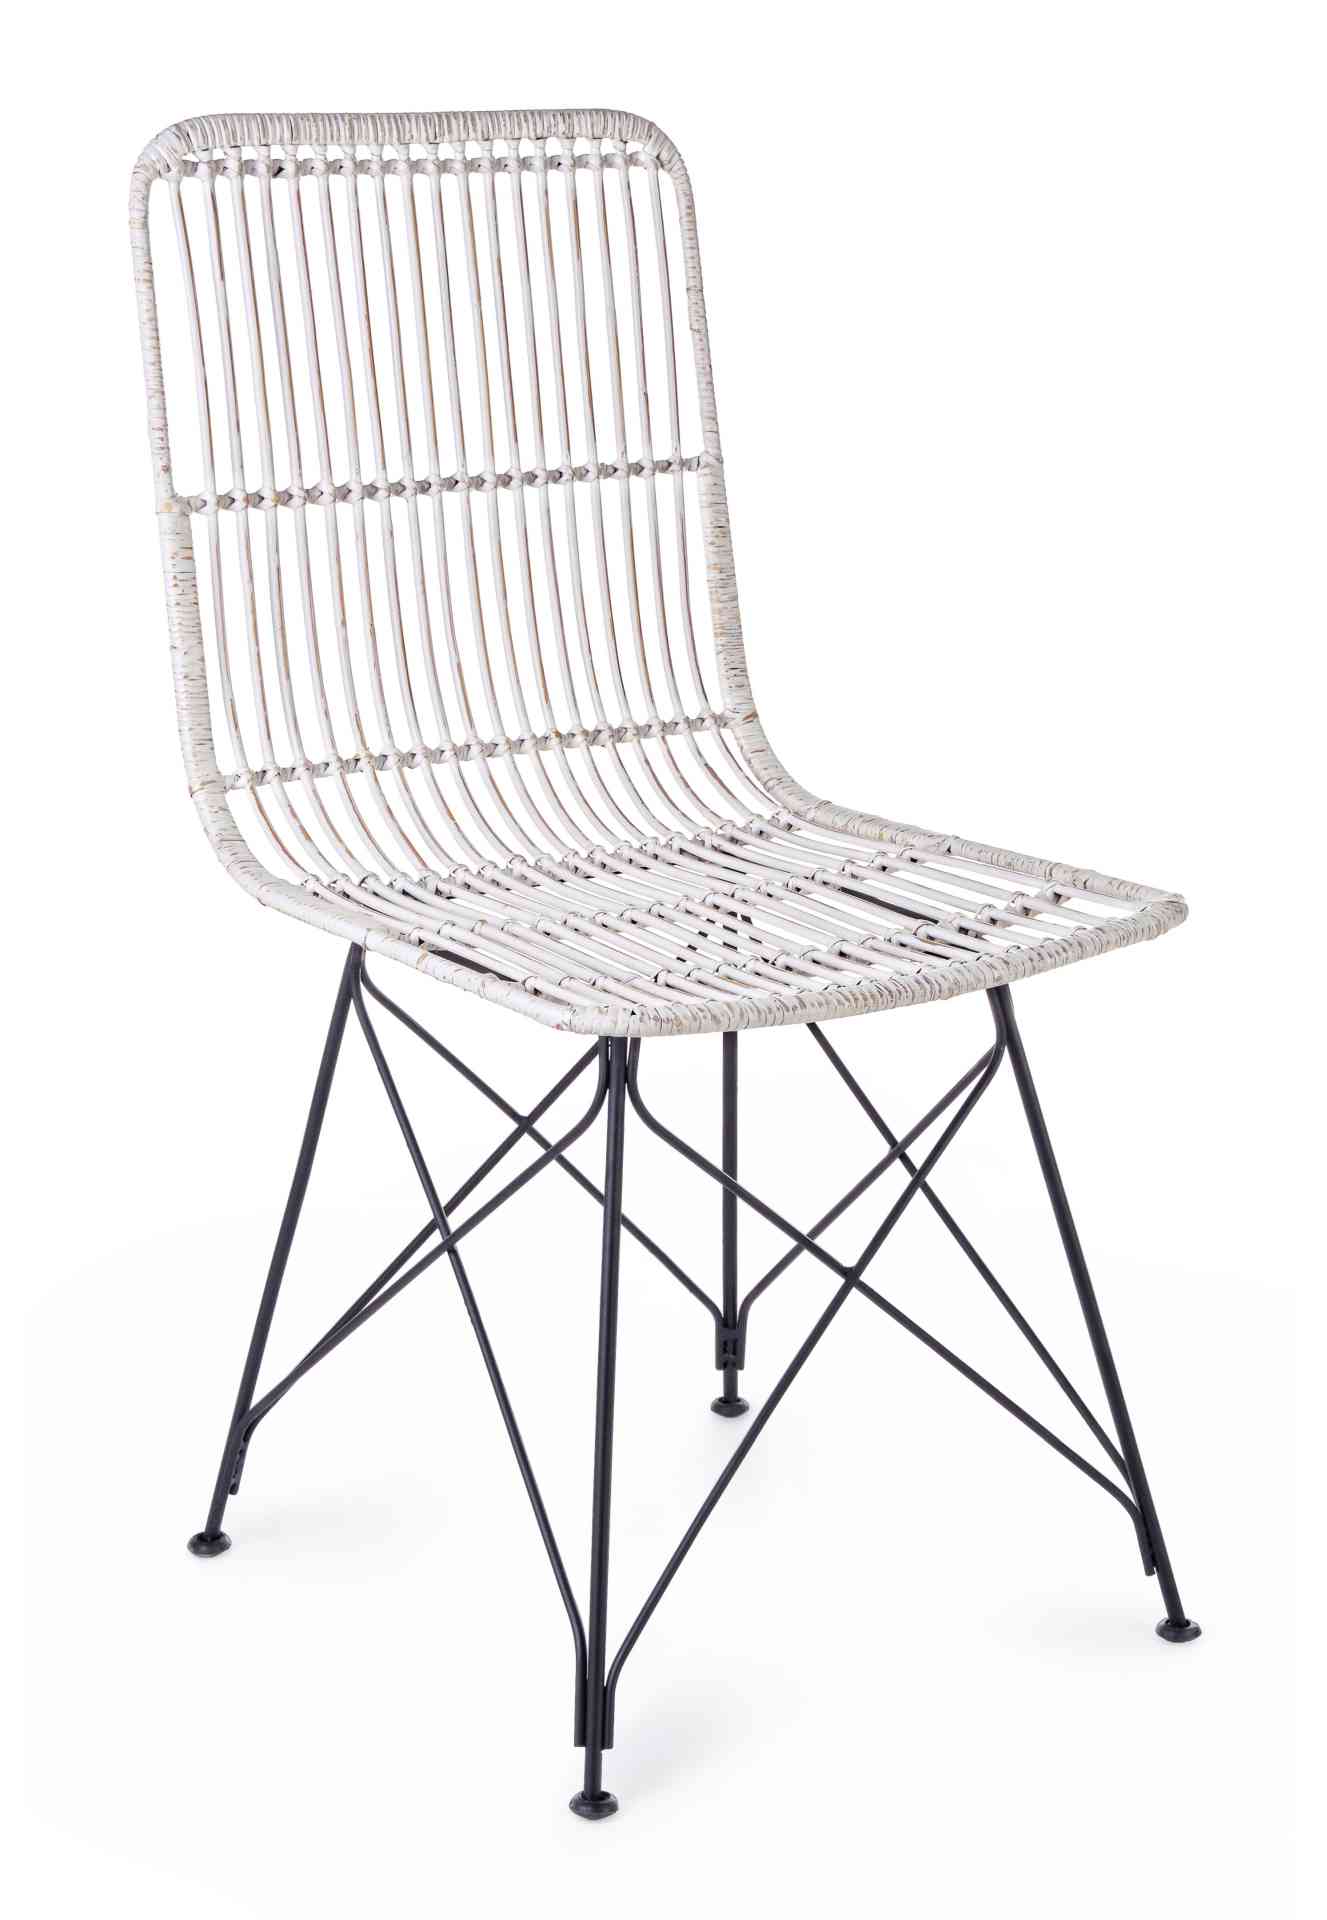 Der Stuhl Lucila Kabu überzeugt mit seinem modernem Design.Gefertigt wurde der Stuhl aus einem Kabugeflecht, welches einen weißen Farbton besitzt. Das Gestell ist aus Metall und hat eine Schwarze Farbe. Die Sitzhöhe beträgt 45 cm.